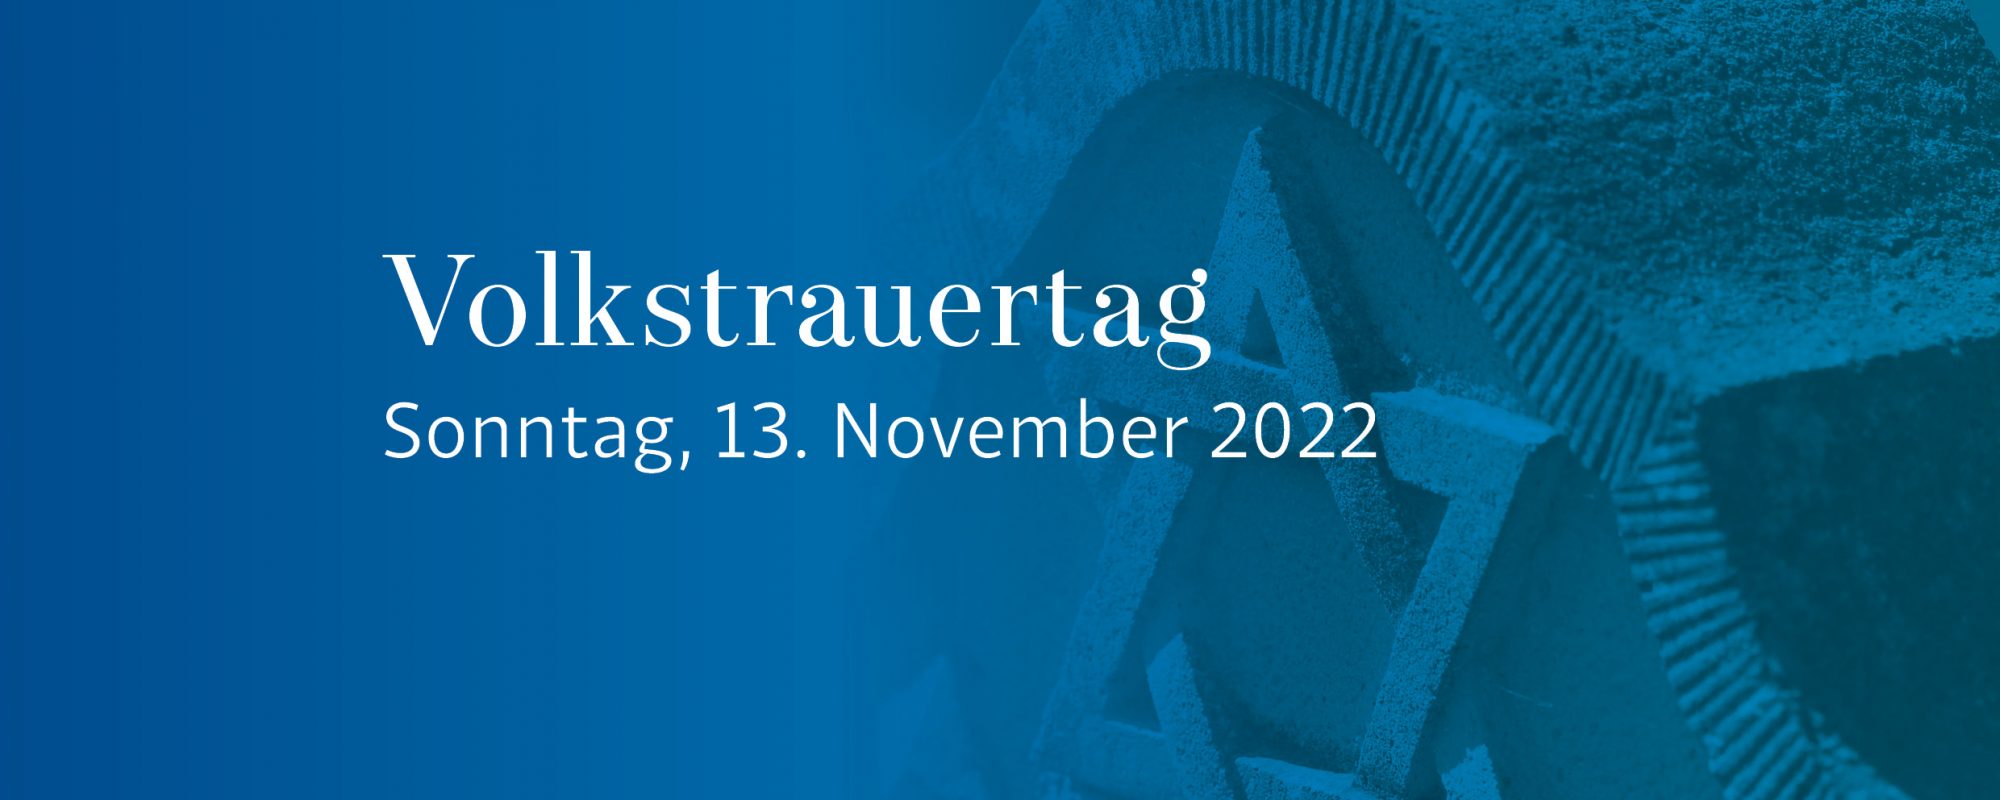 Volkstrauertag 2022 Würzburg